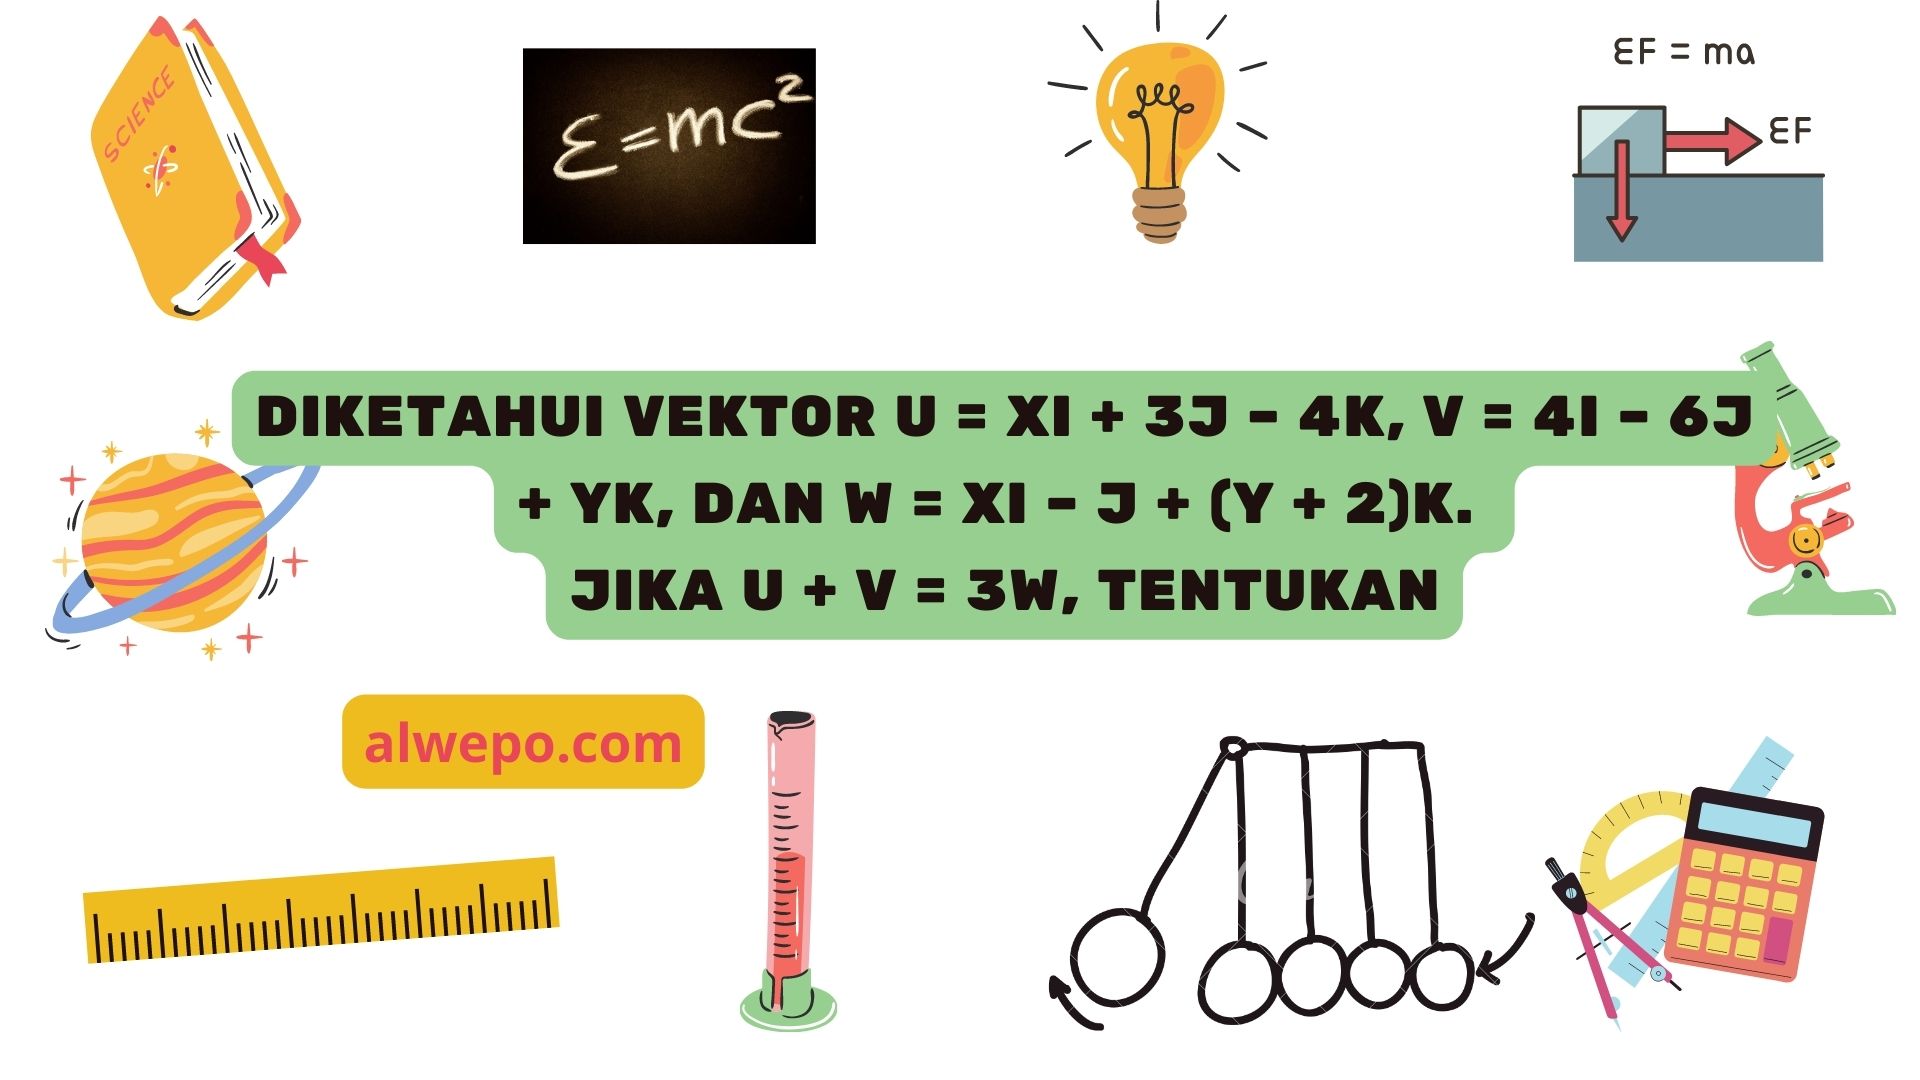 Diketahui vektor u = xi + 3j – 4k, v = 4i – 6j + yk, dan w = xi – j + (y + 2)k. Jika u + v = 3w, tentukan